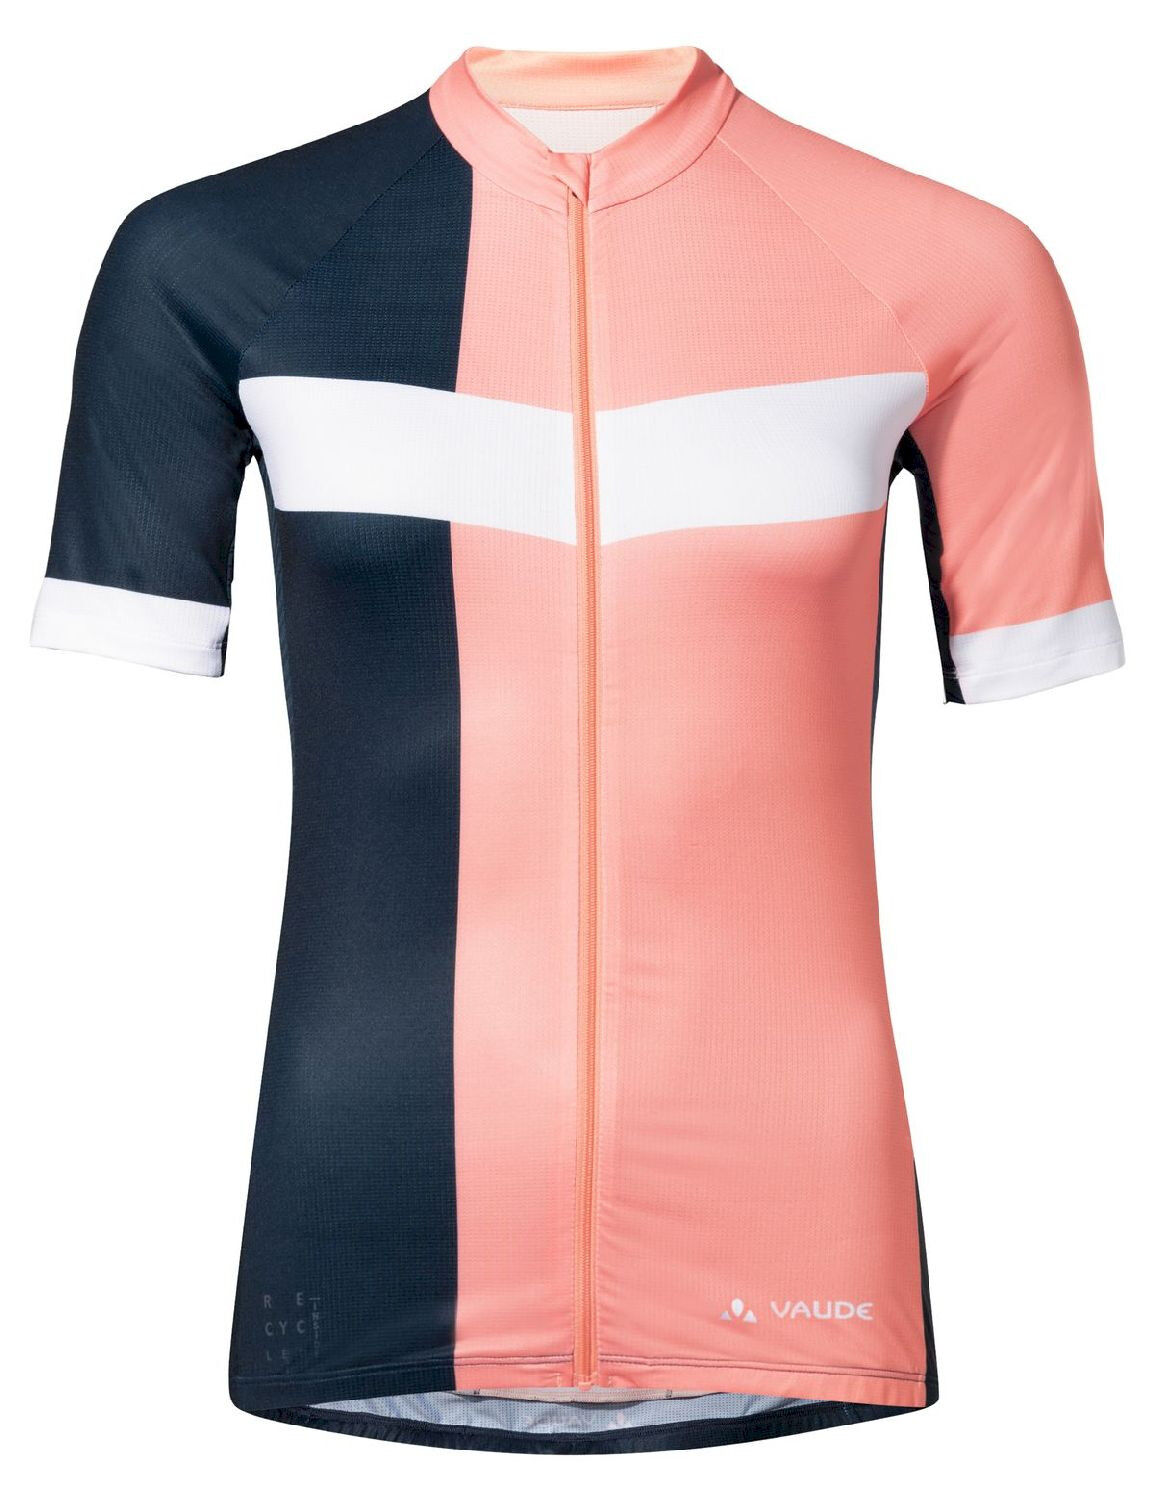 Vaude Posta FZ Tricot - Cycling jersey - Women's